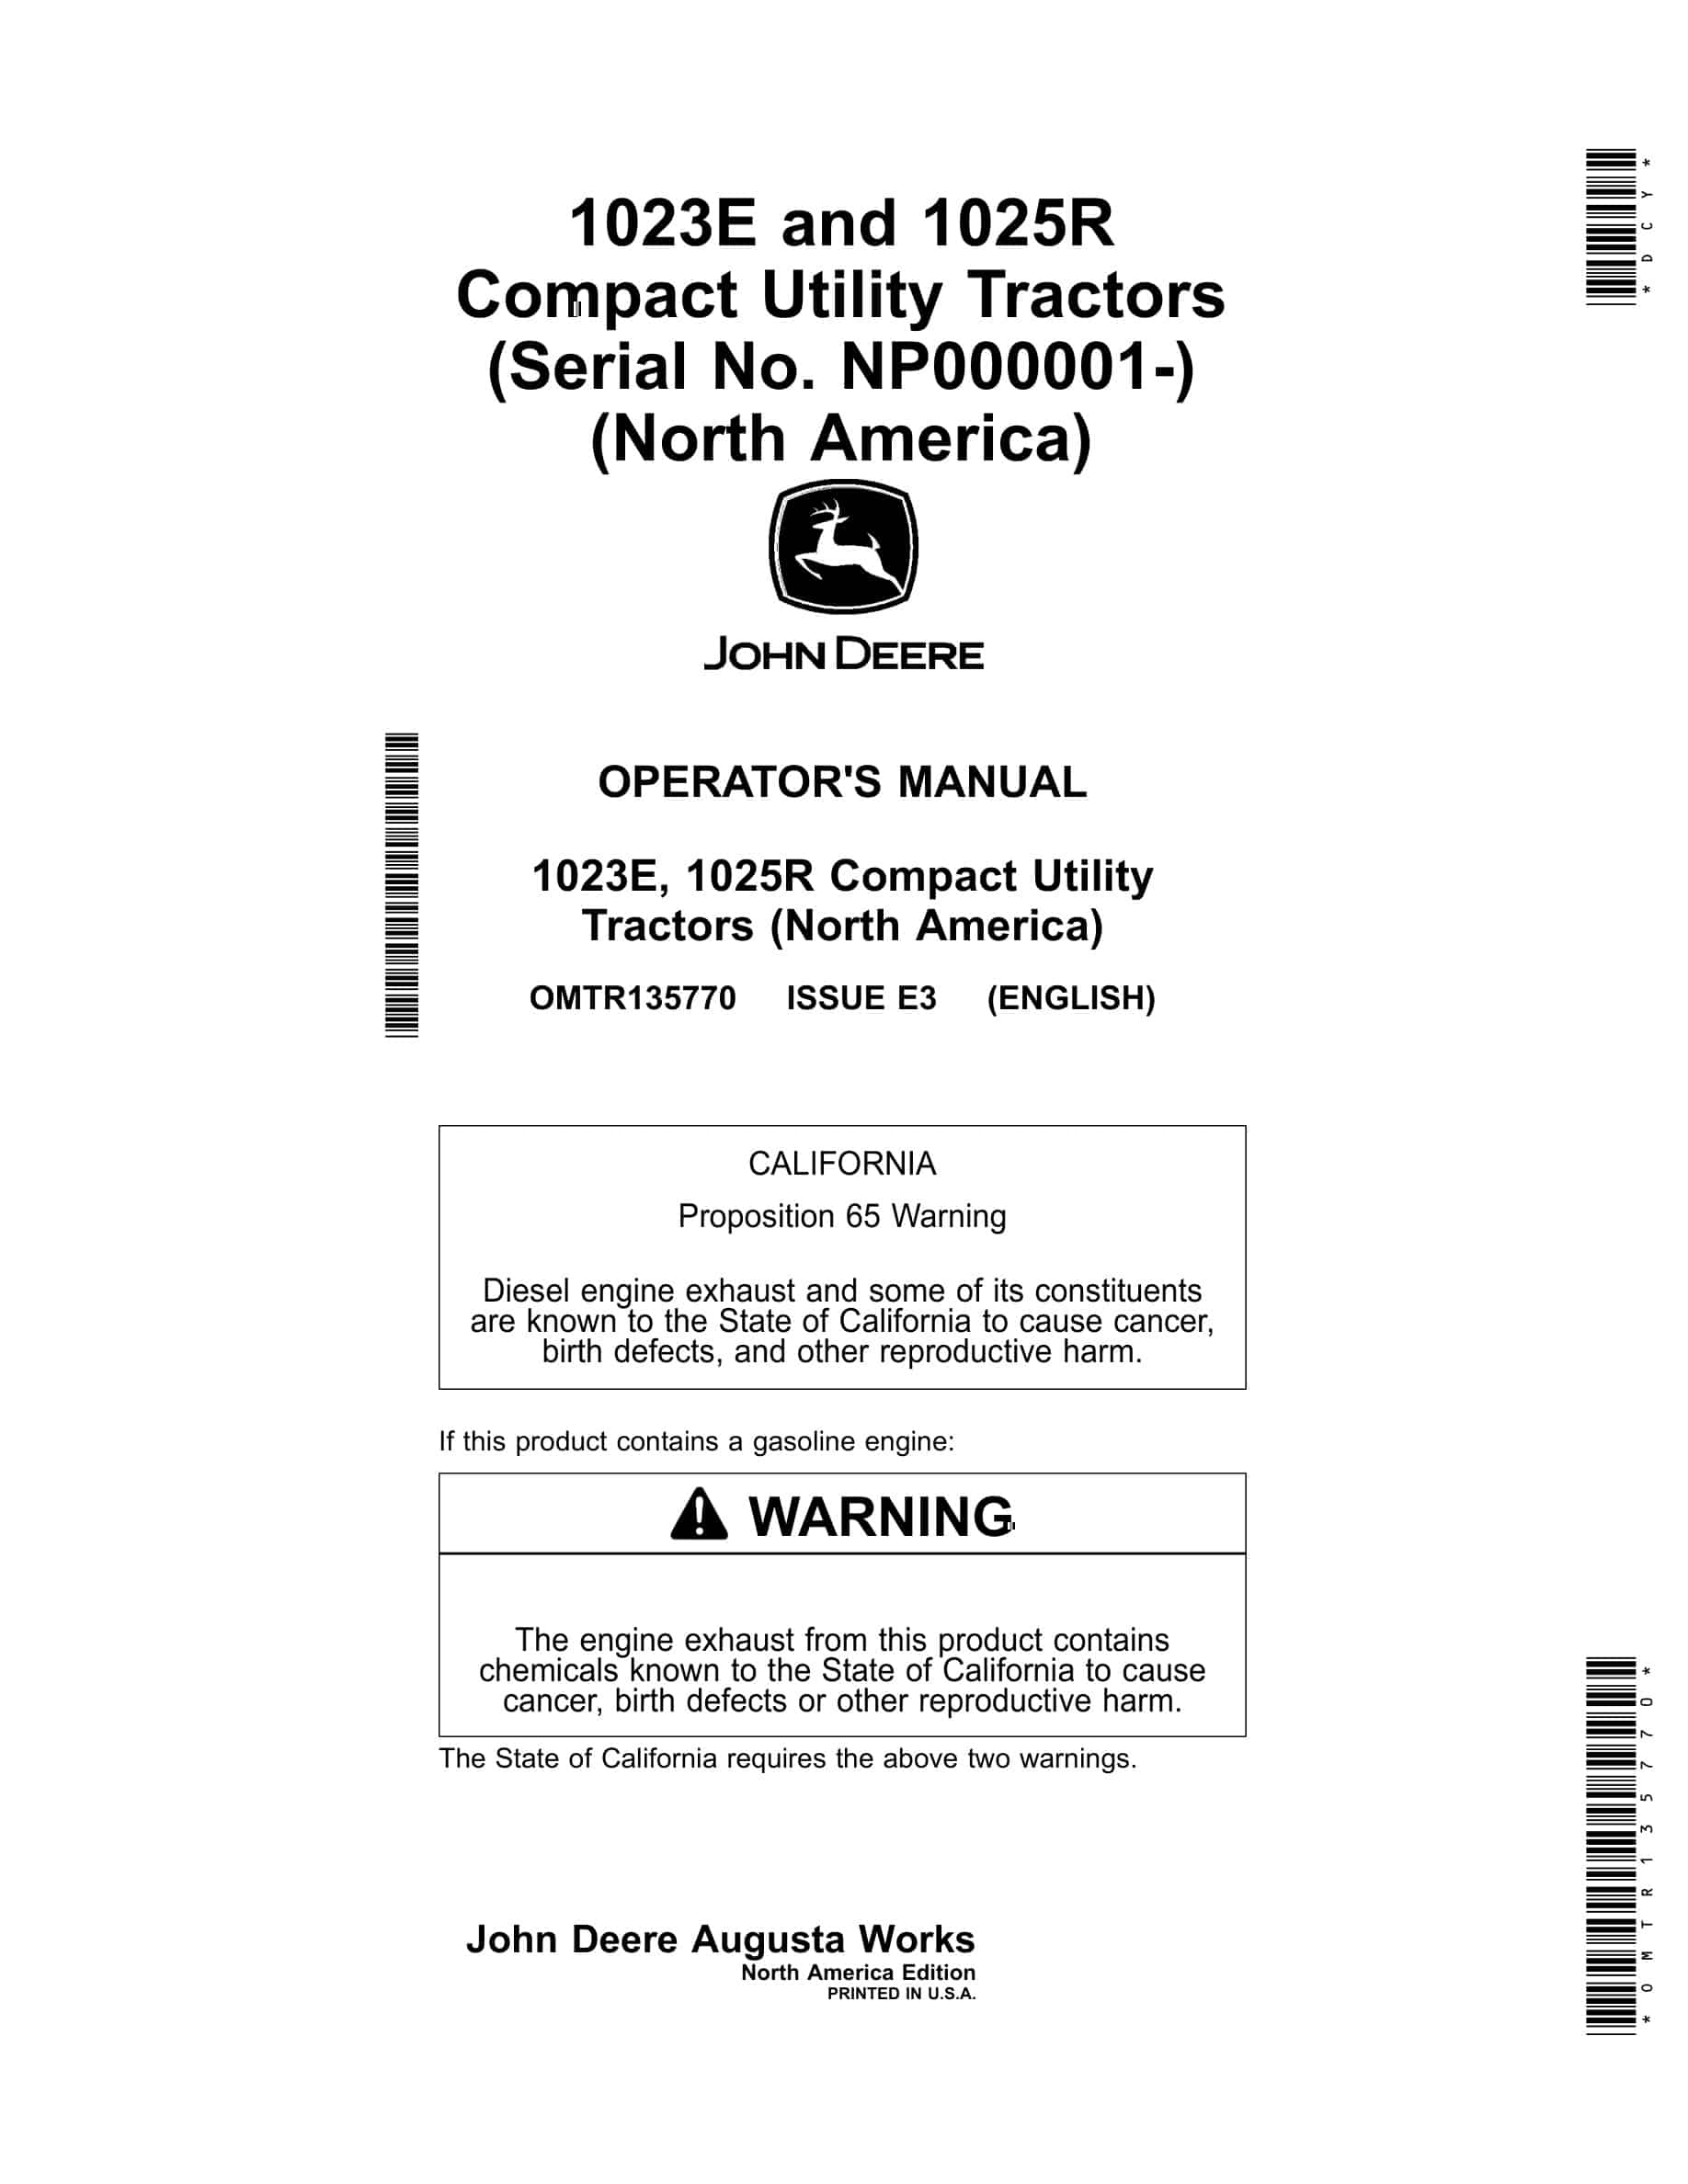 John Deere 1023e, 1025r Compact Utility Tractors Operator Manuals OMTR135770-1